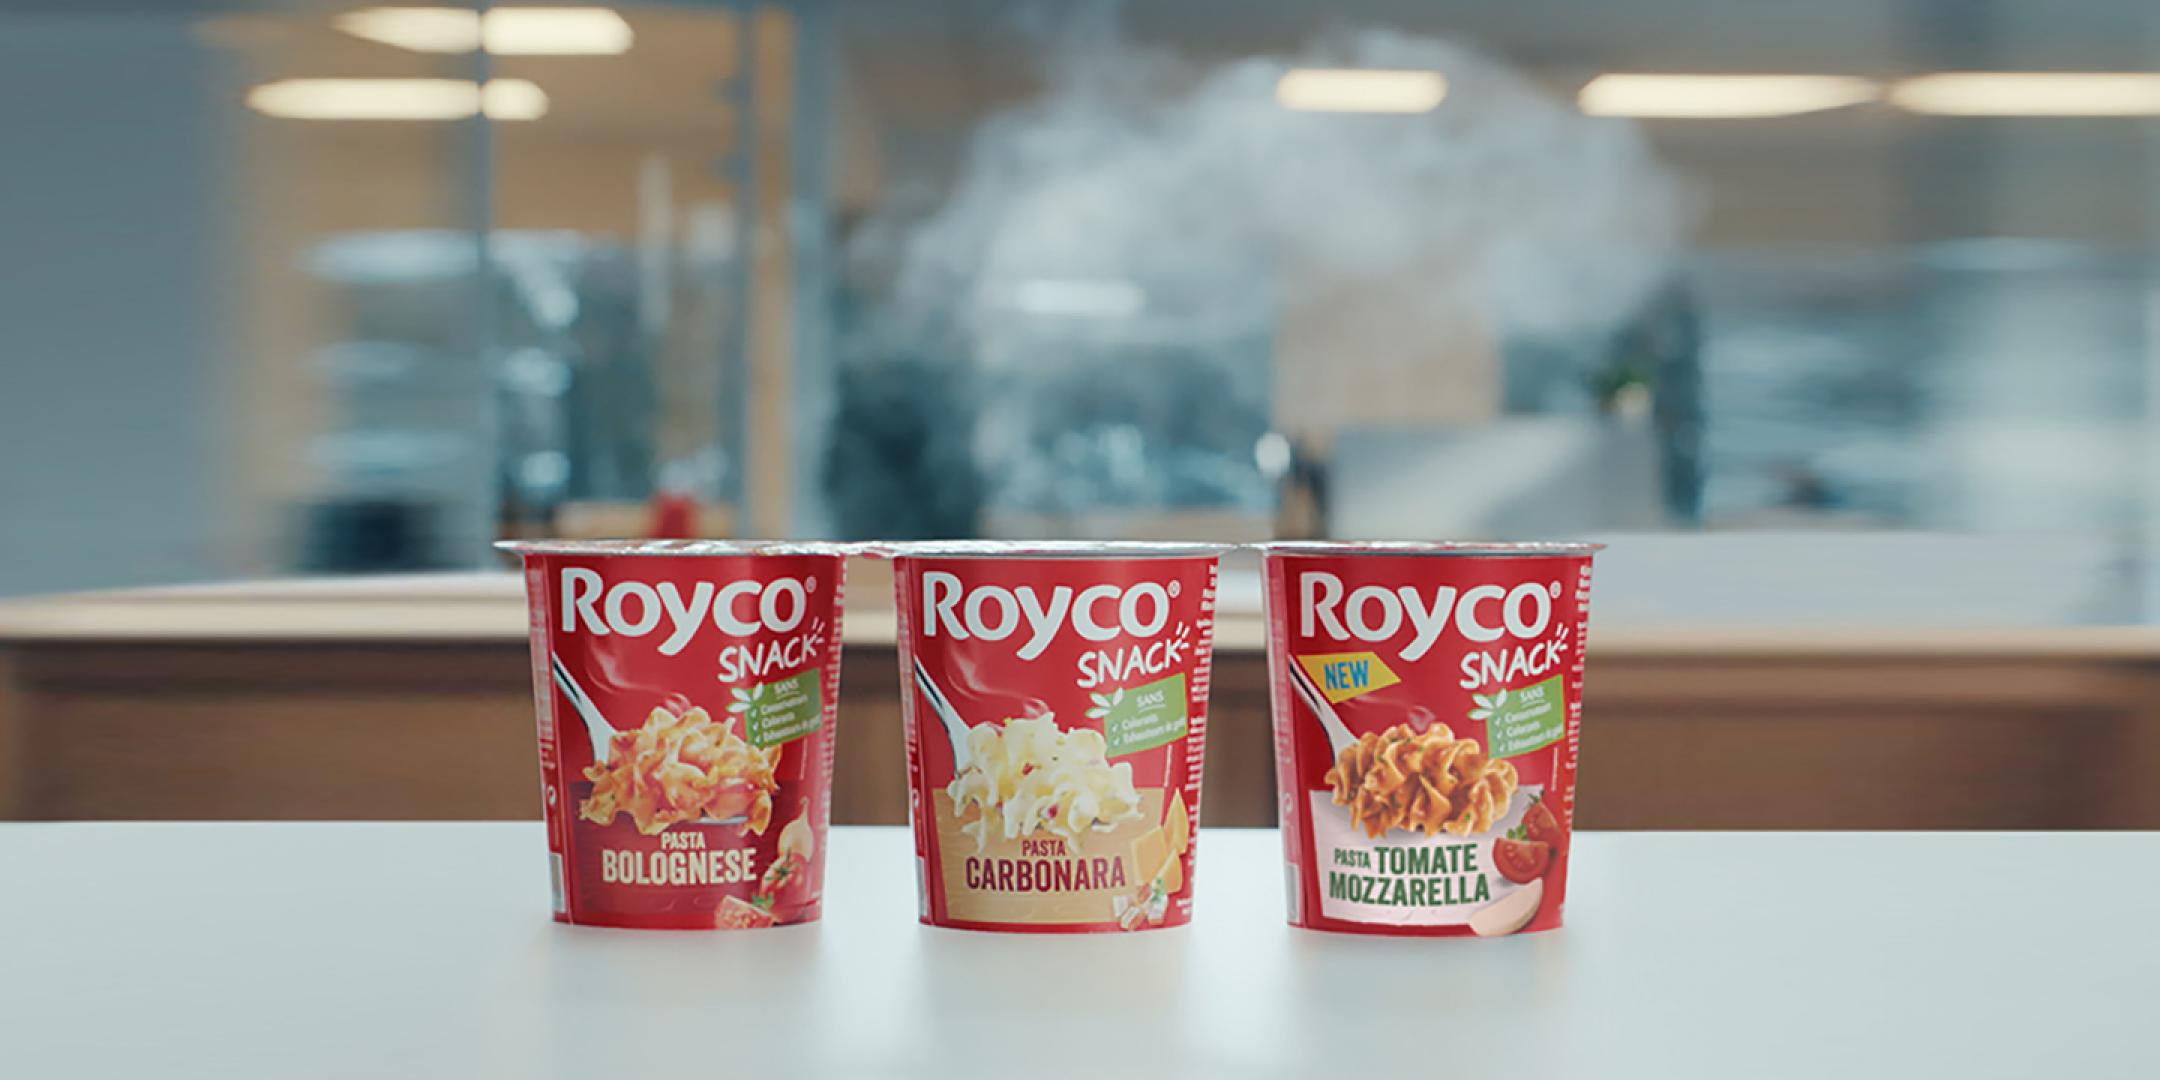 Royco snacks